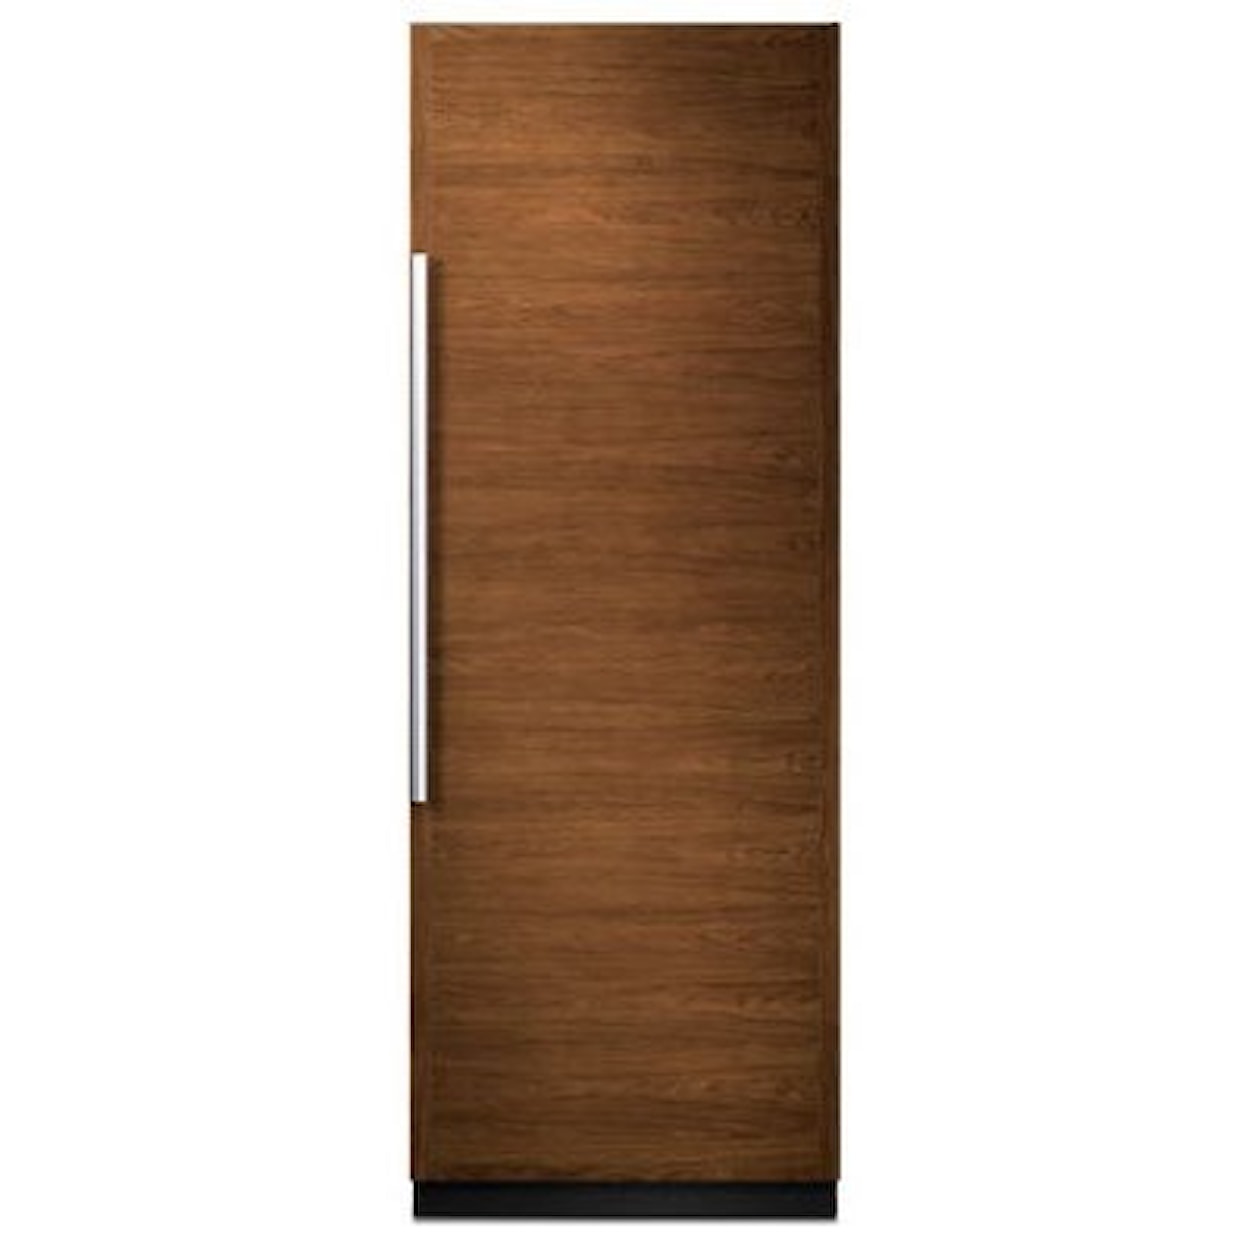 Jenn-Air Refrigerator - Column 24” Built-In Freezer Column